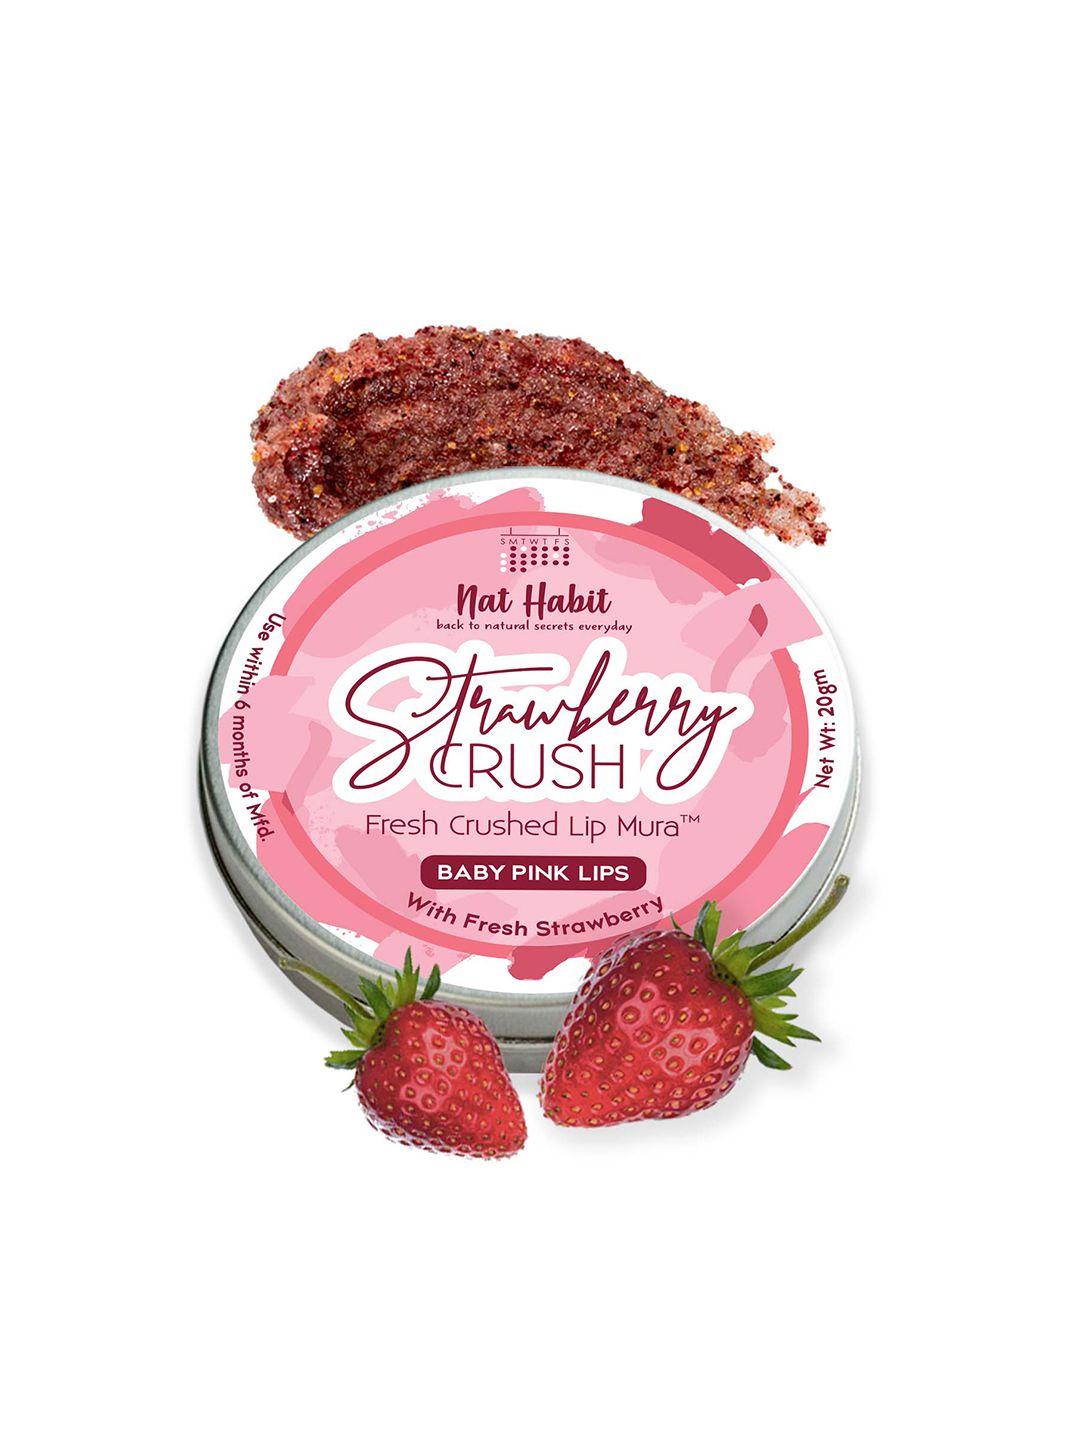 nat habit strawberry crush fresh crushed lip mura for baby pink lips - 20g